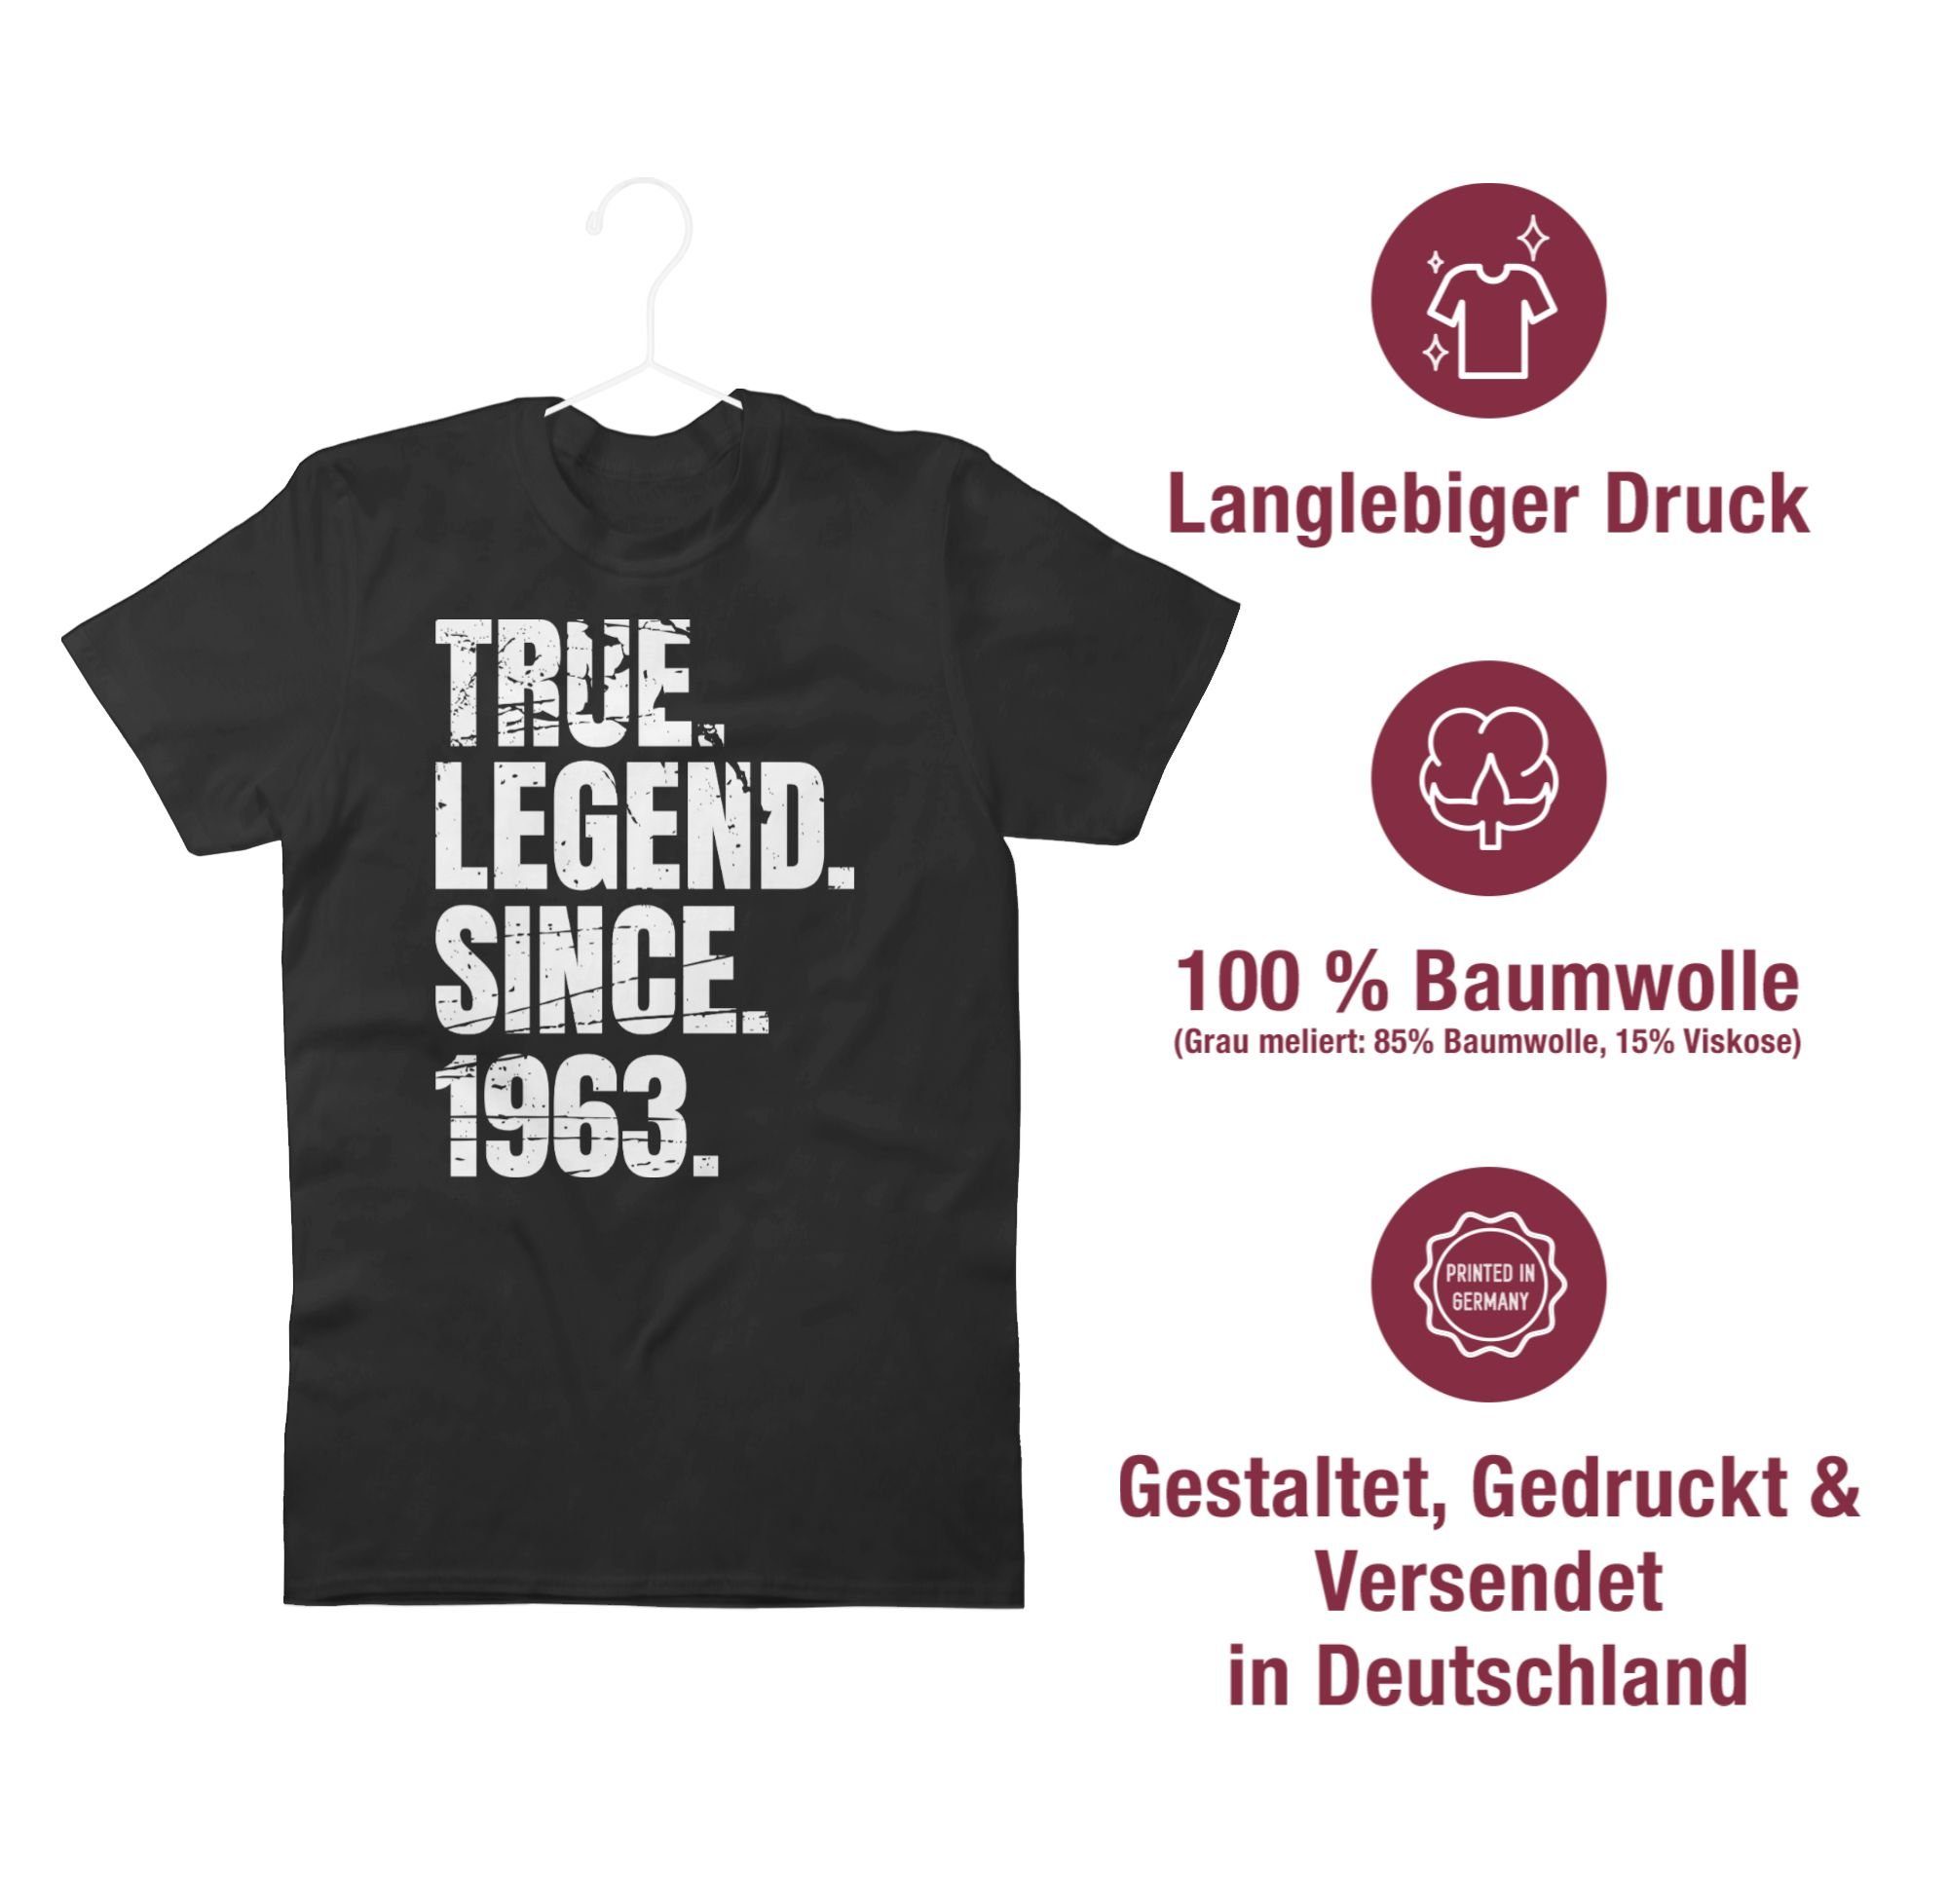 T-Shirt Schwarz Geburtstag 1963 since 01 60. Shirtracer True Vintage Legend